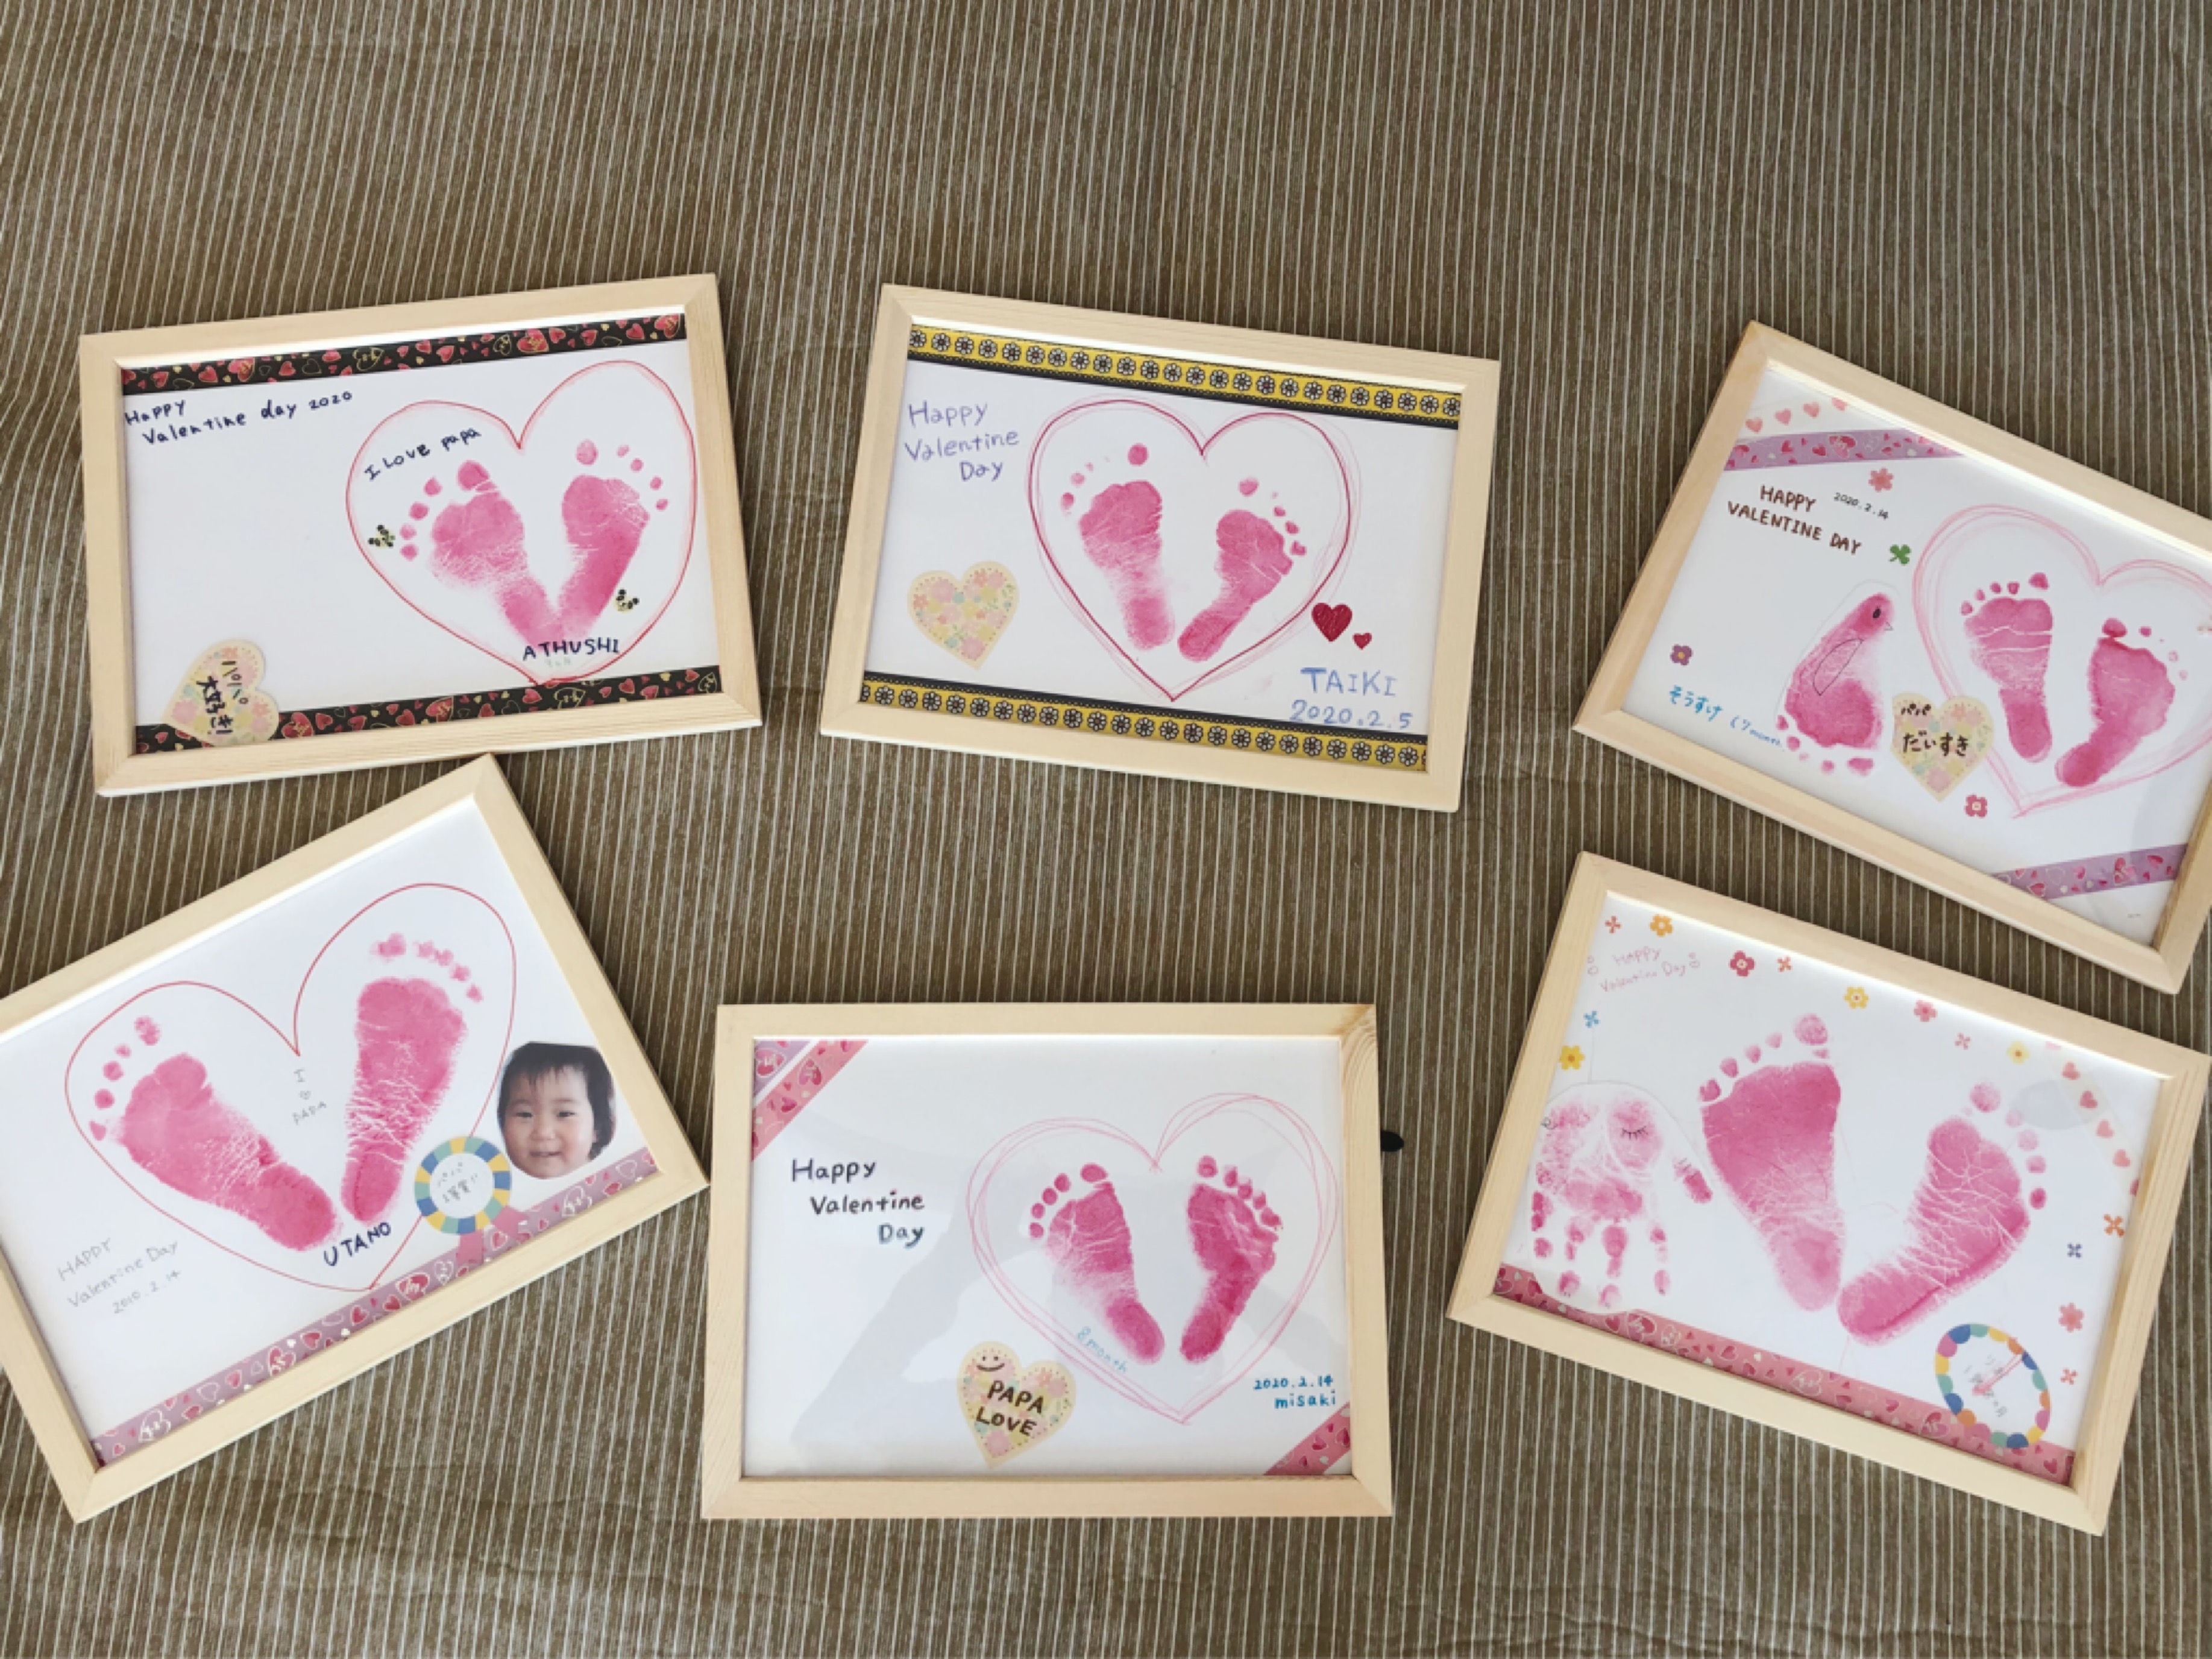 赤ちゃんの足形アートでバレンタインのプレゼント作り 群馬前橋 オンライン ママと赤ちゃんの産後ダイエット教室